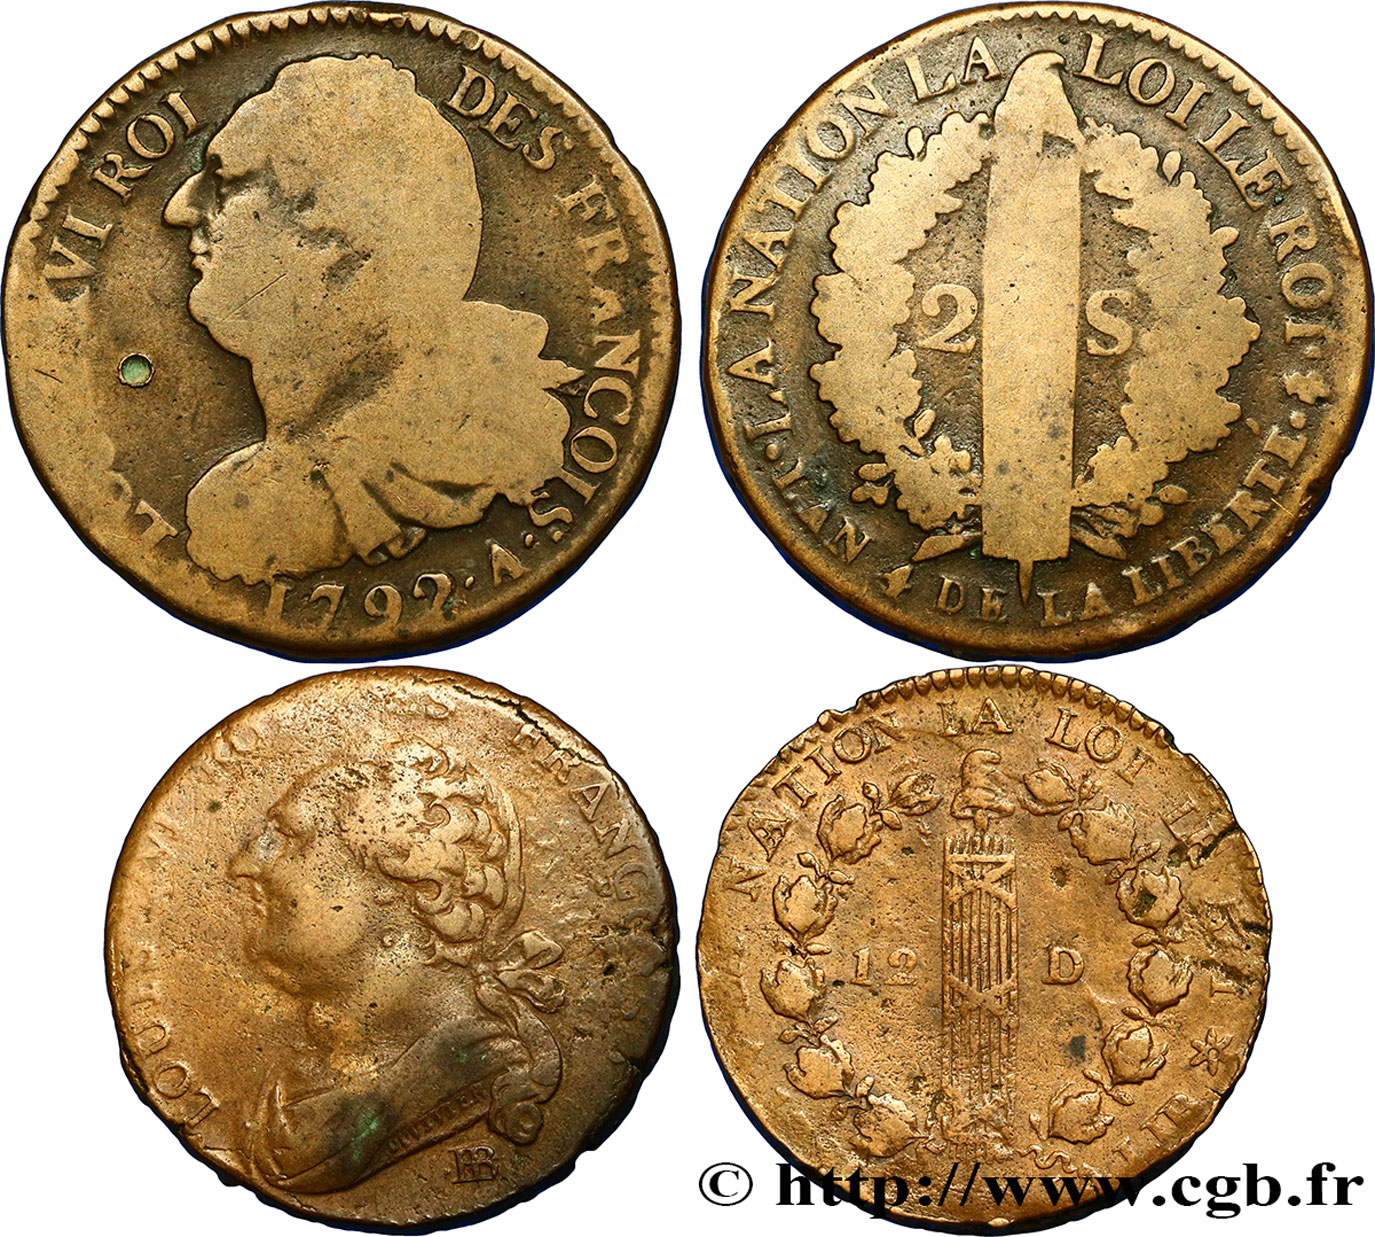 LOTS Lot de deux monnaies de la Révolution française n.d. s.l. TB